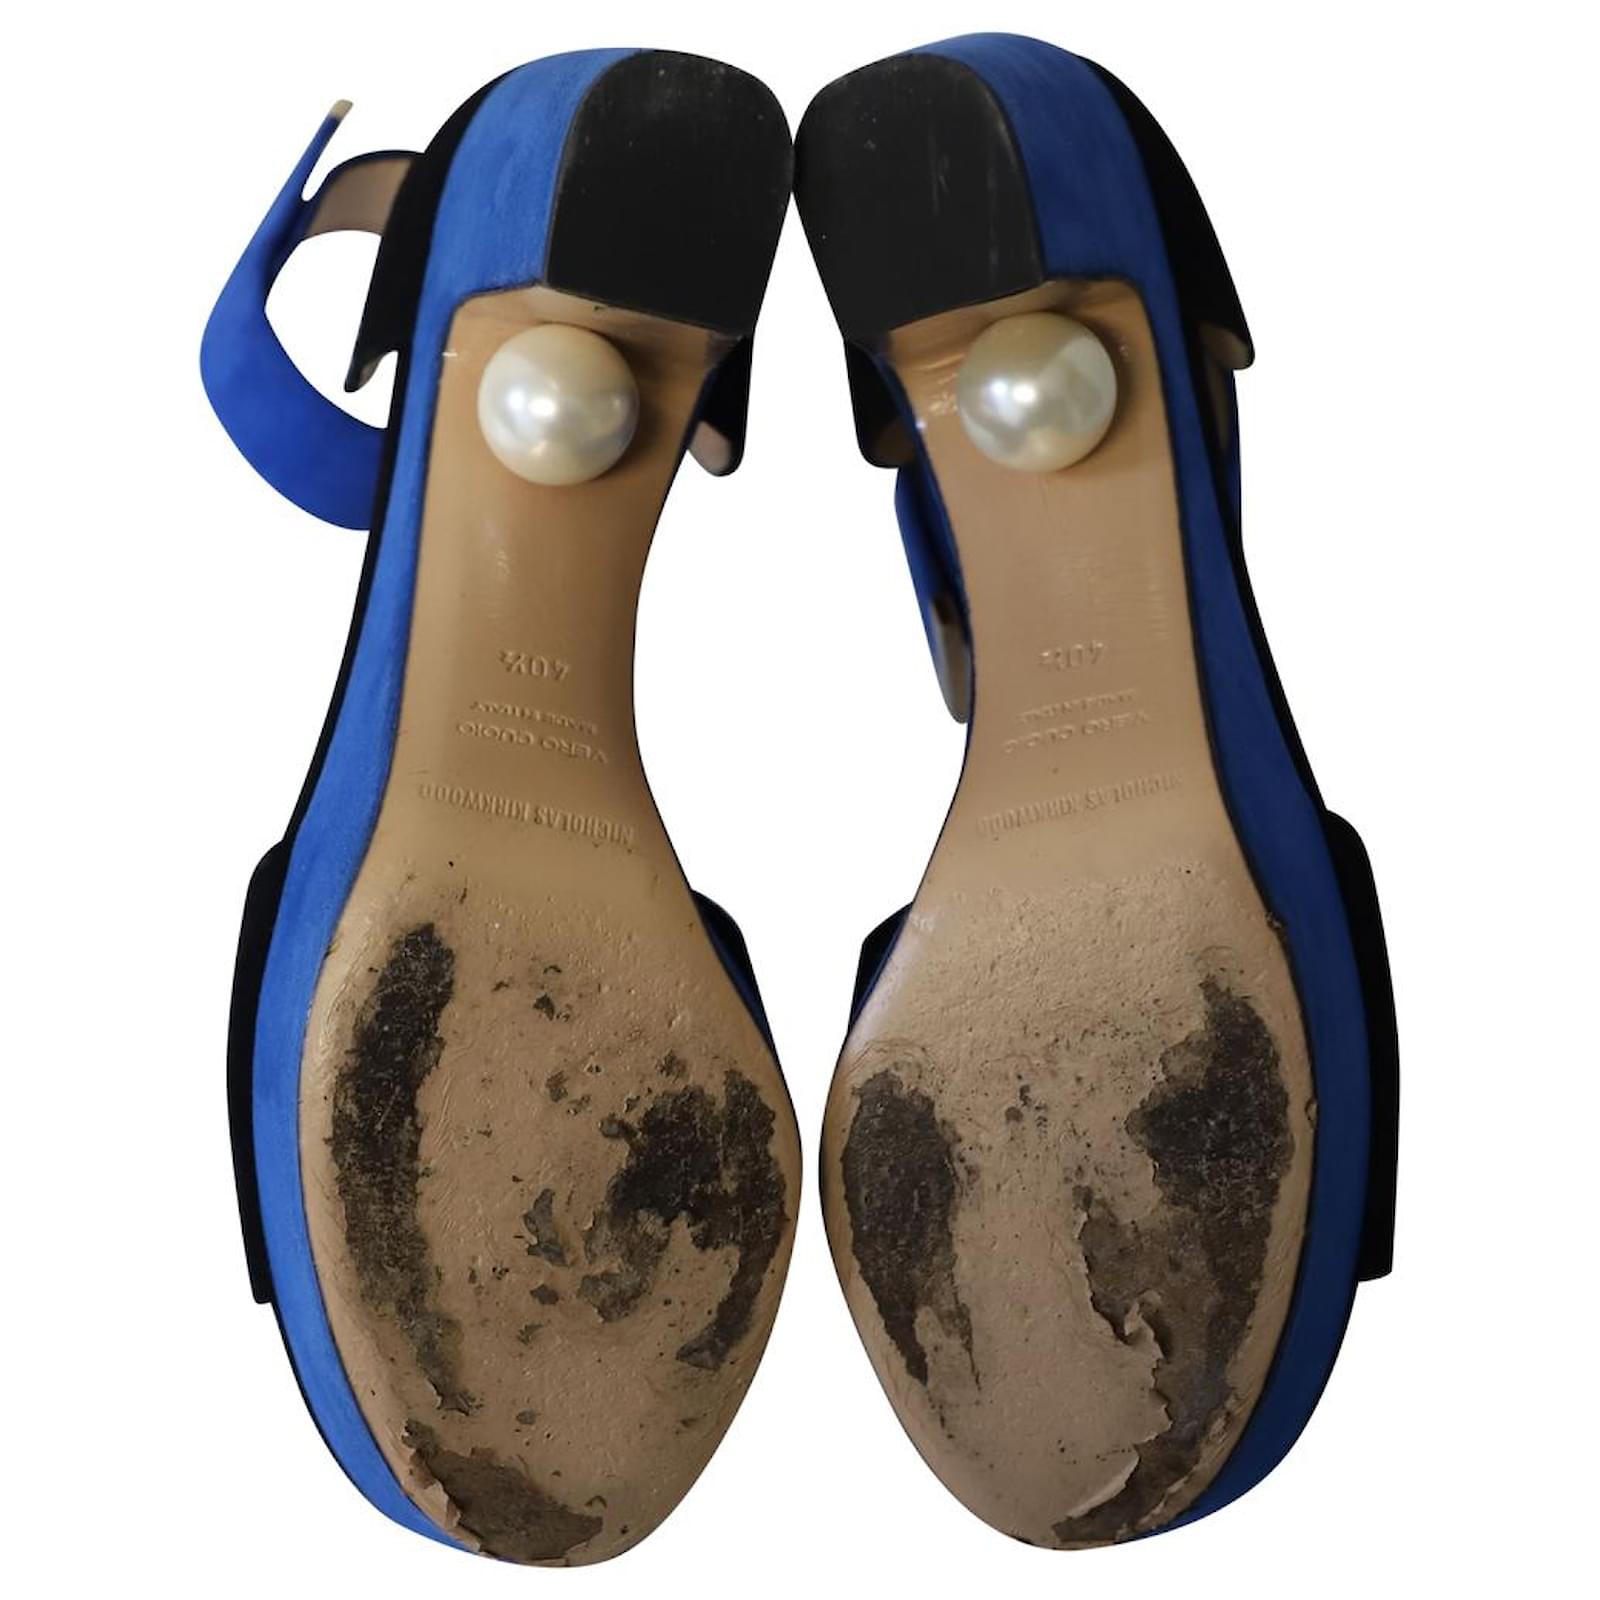 Nicholas Kirkwood Strappy High Heel Sandals in Blue Suede ref